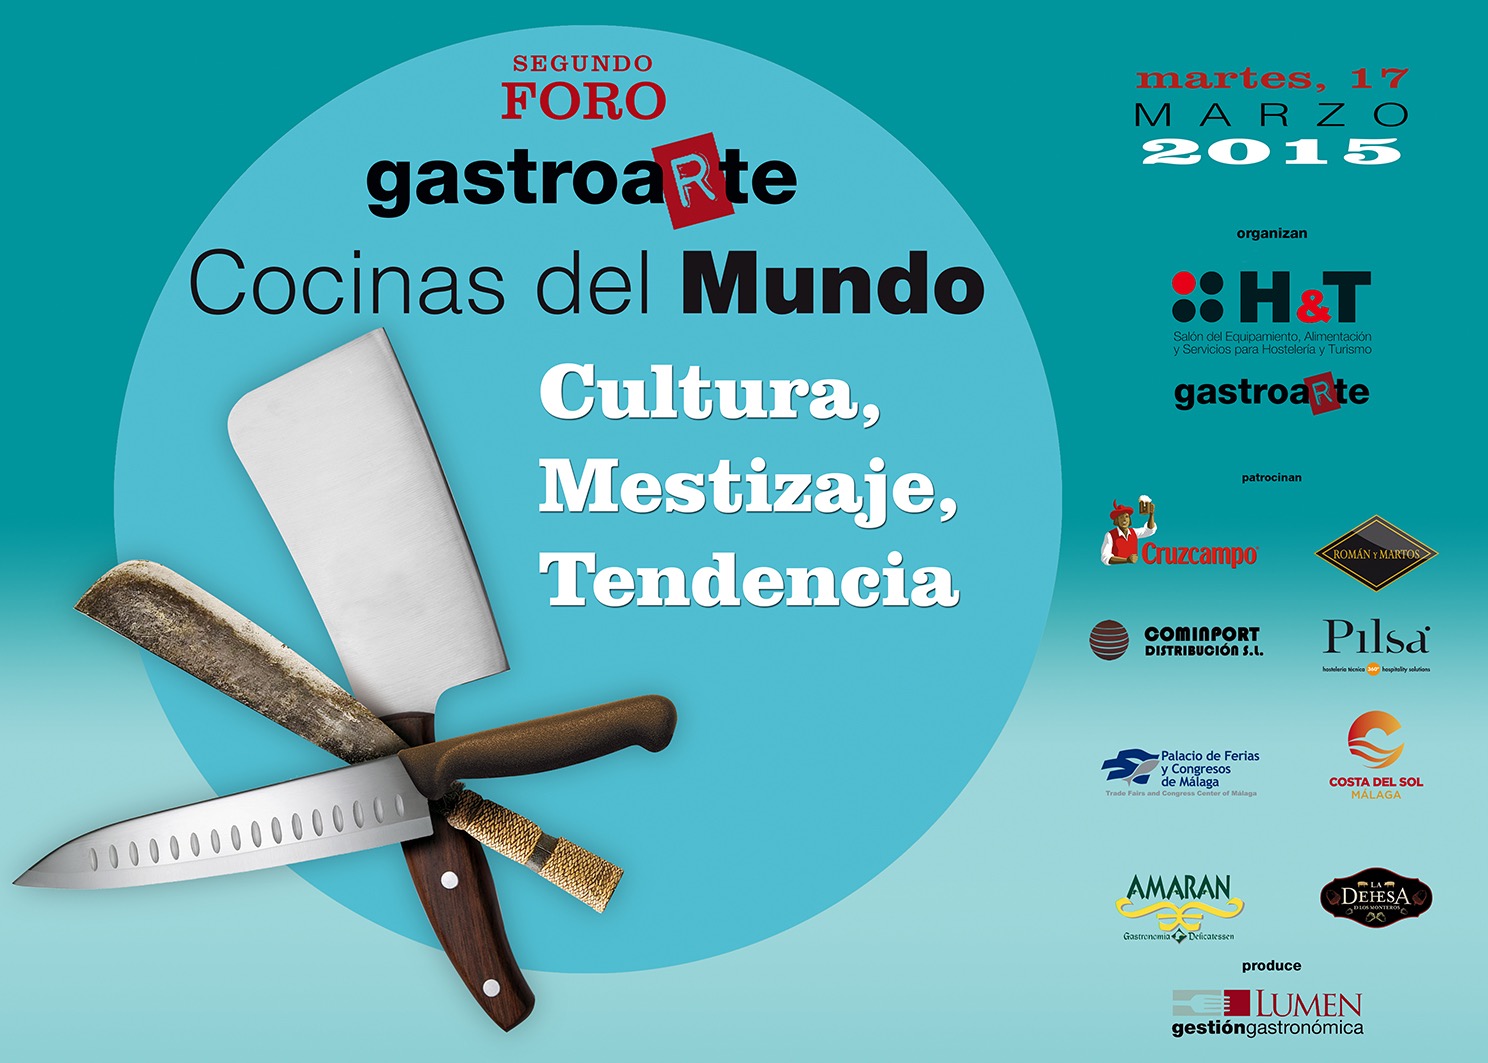 Segundo Foro Cocinas del Mundo. HyT (Palacio de Ferias y Congresos de Málaga)